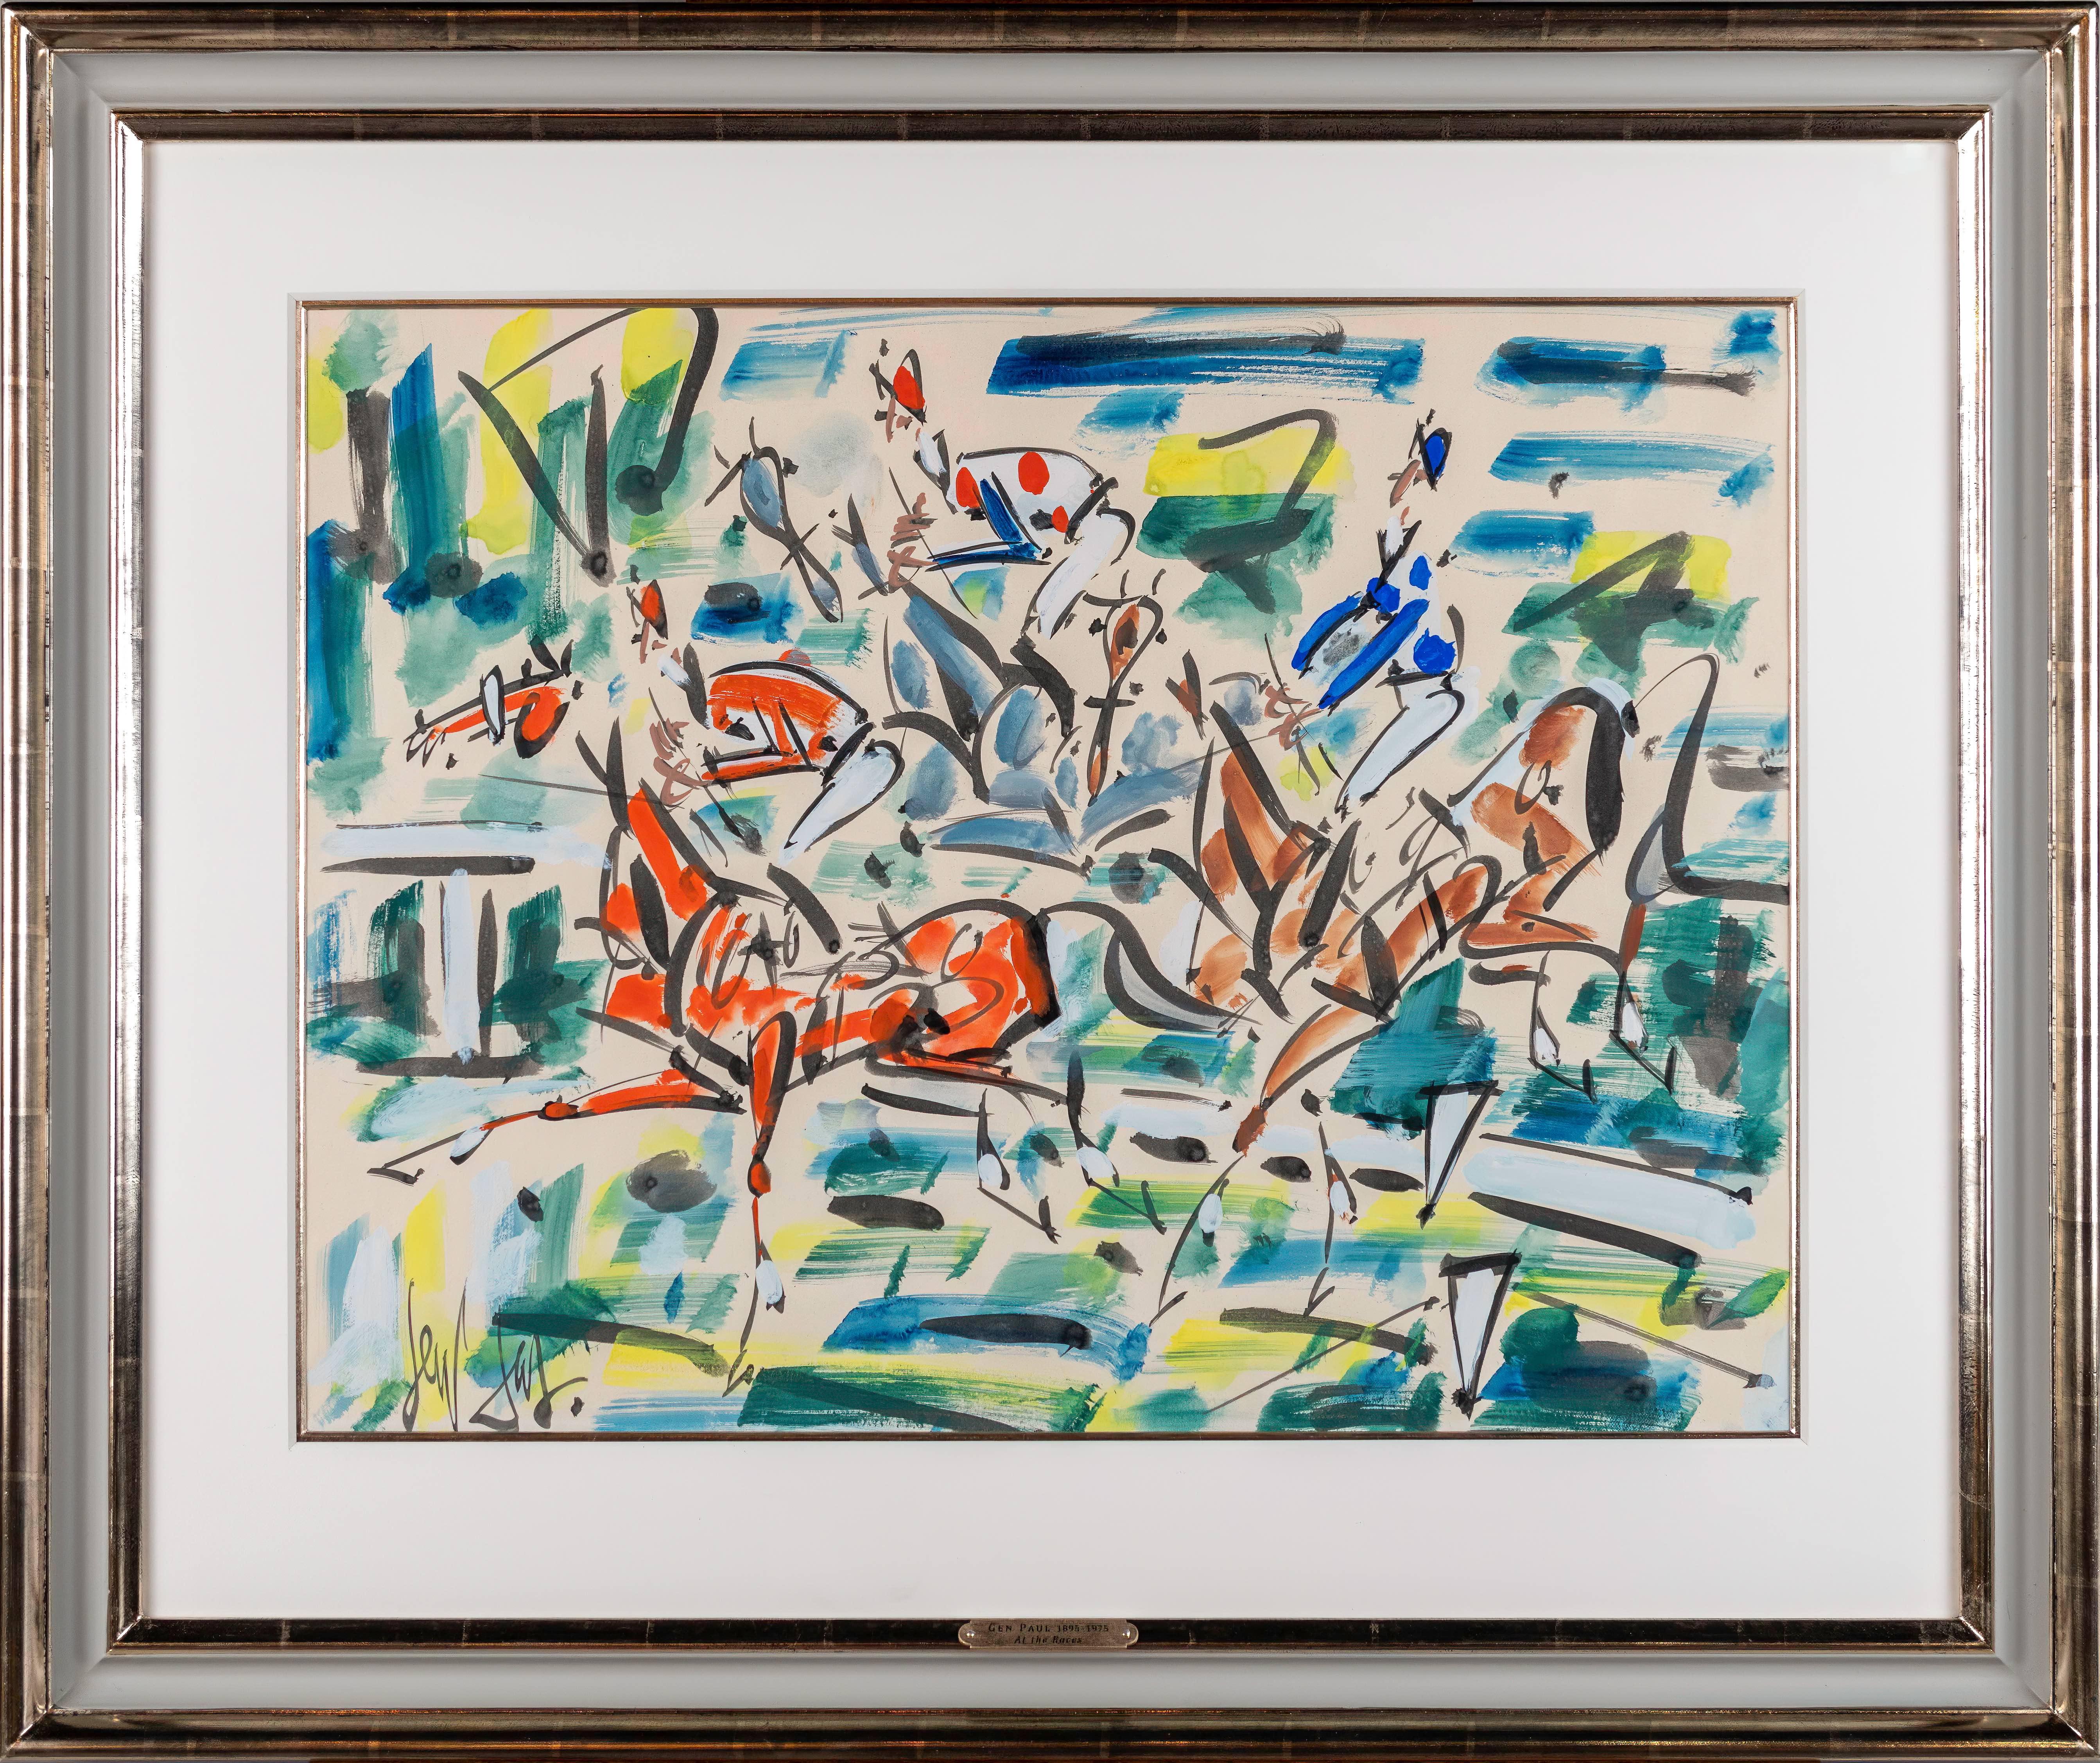 Peinture abstraite colorée « At the Races » représentant des chevaux et des jockeys courses à Paris 